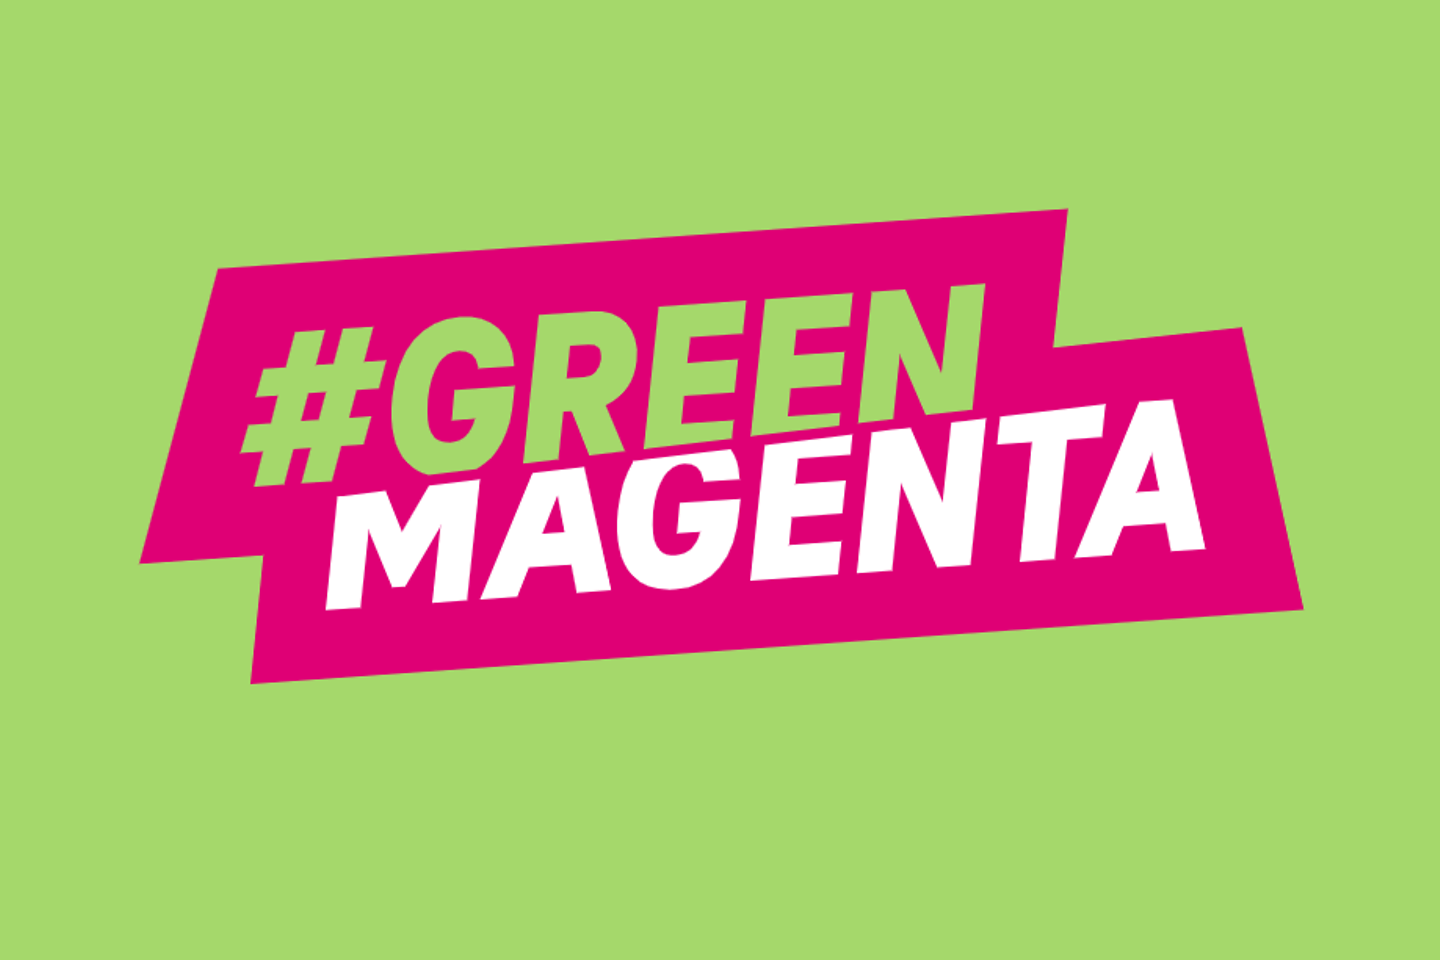 El logotipo de #GreenMagenta sobre un fondo verde.